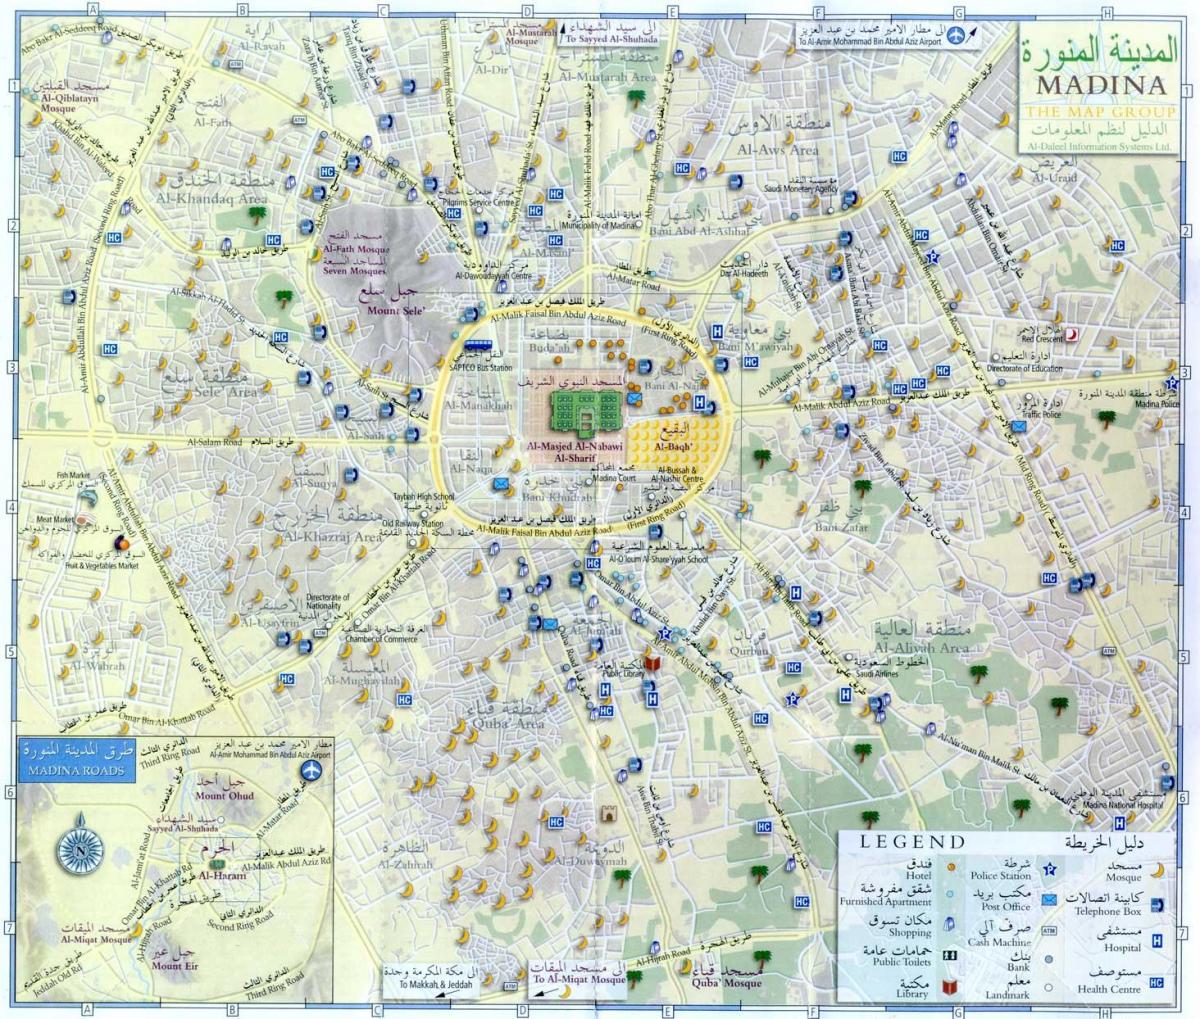 Plan du centre ville de Mecca (Makkah)